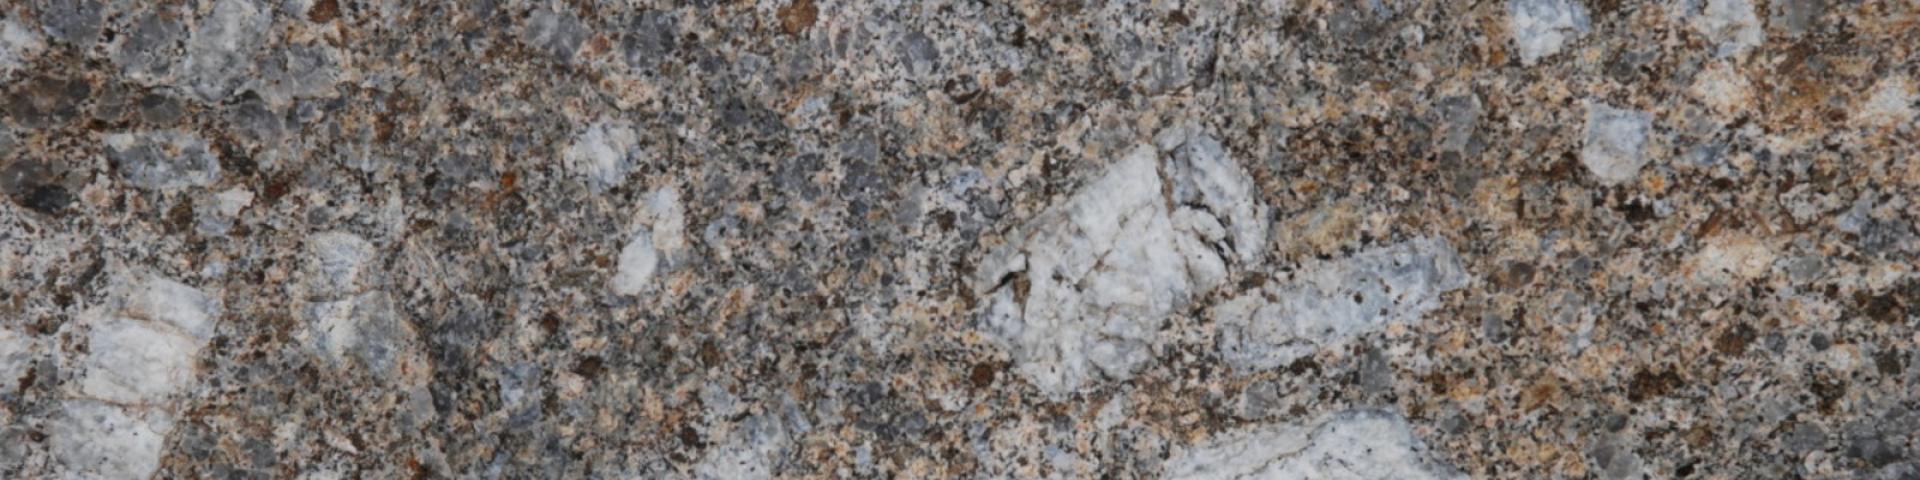 Granite varisque du mont Aigoual © BRGM - François Michel